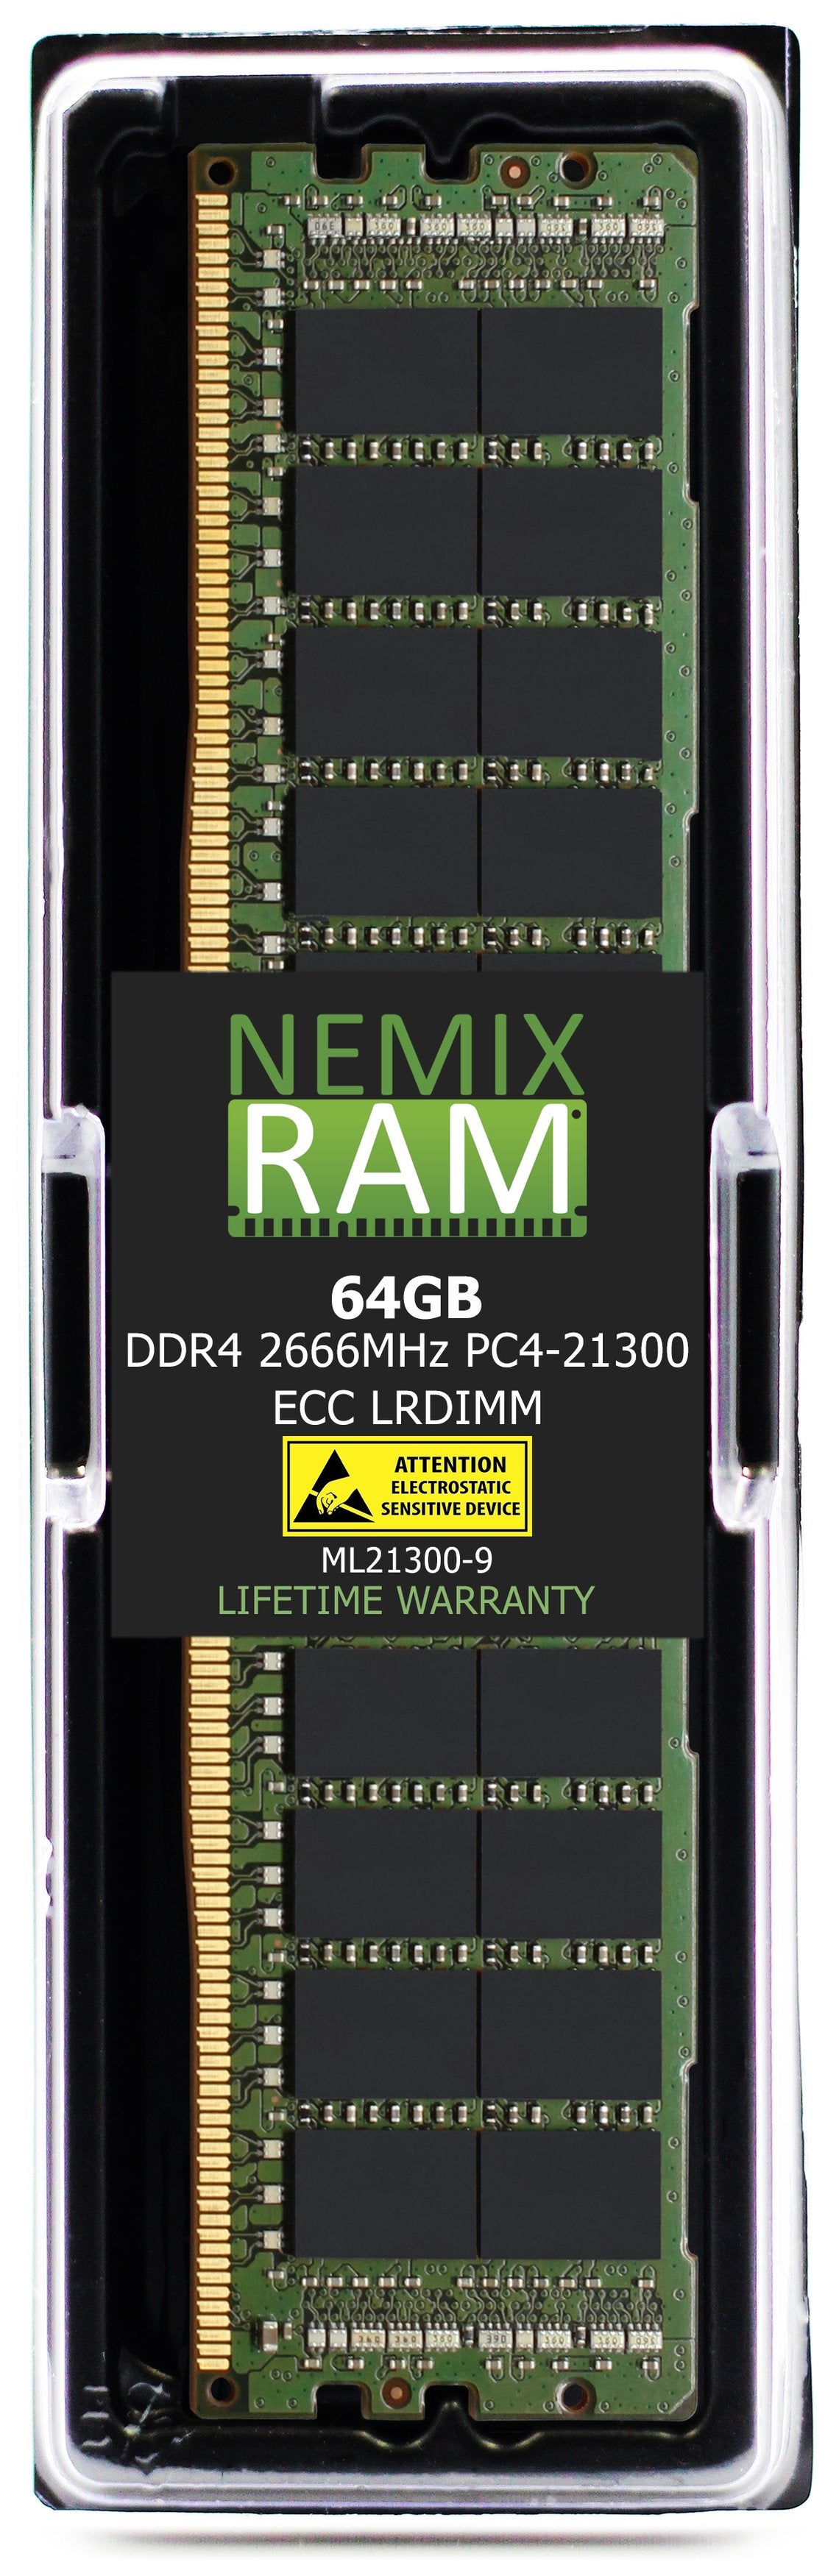 64GB DDR4 2666MHZ PC4-21300 LRDIMM Compatible with Supermicro MEM-DR464L-SL01-LR26